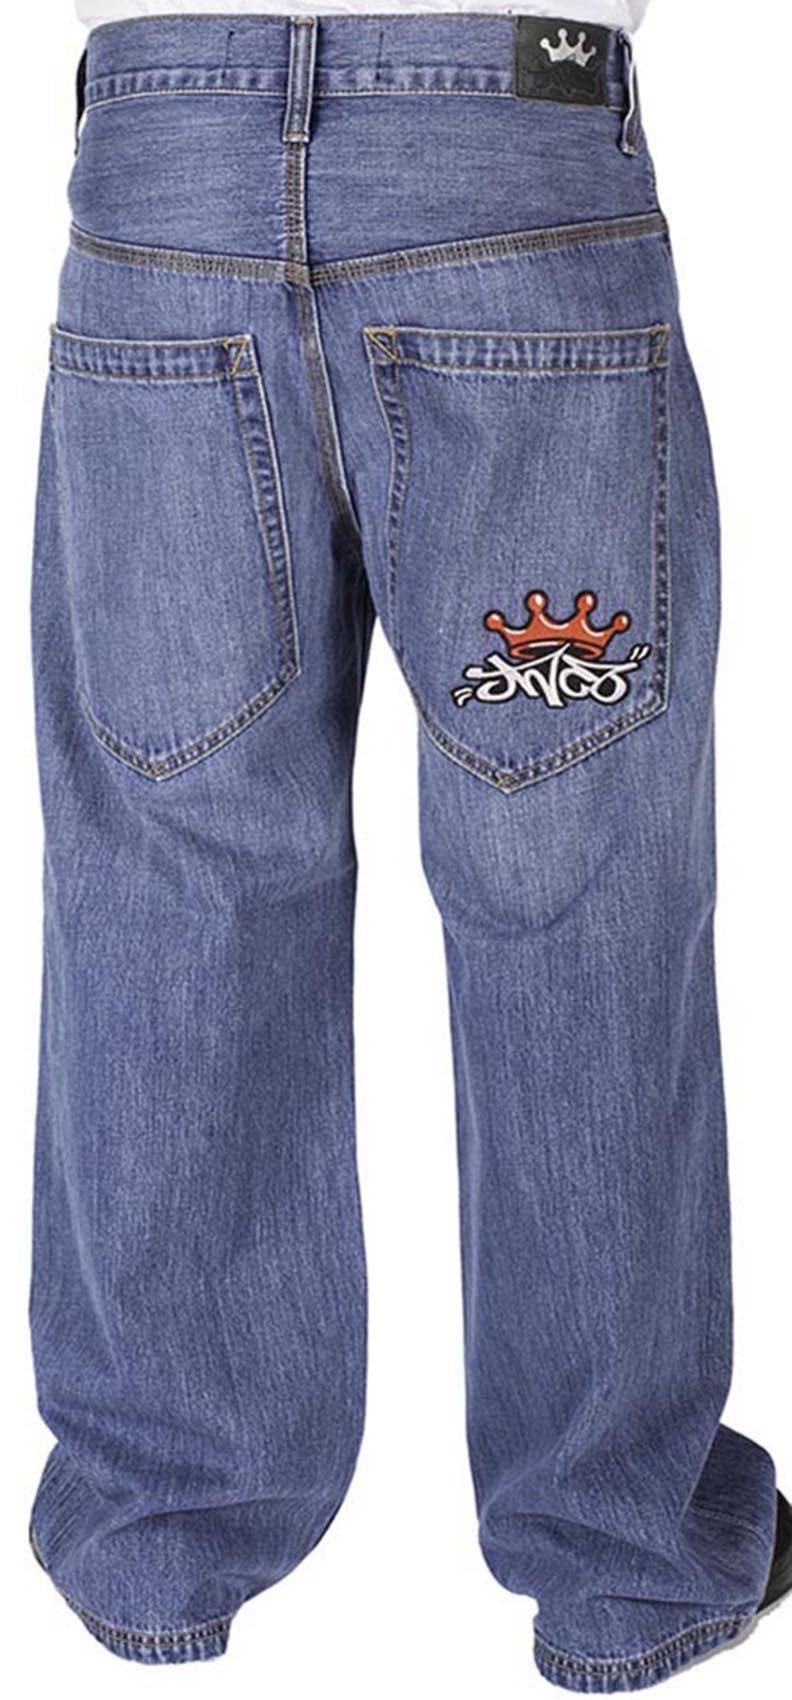 Detektiv Fjernelse Betydelig JNCO Jeans - JNCO Half Pipes Jeans (Stone Wash) – Bewild